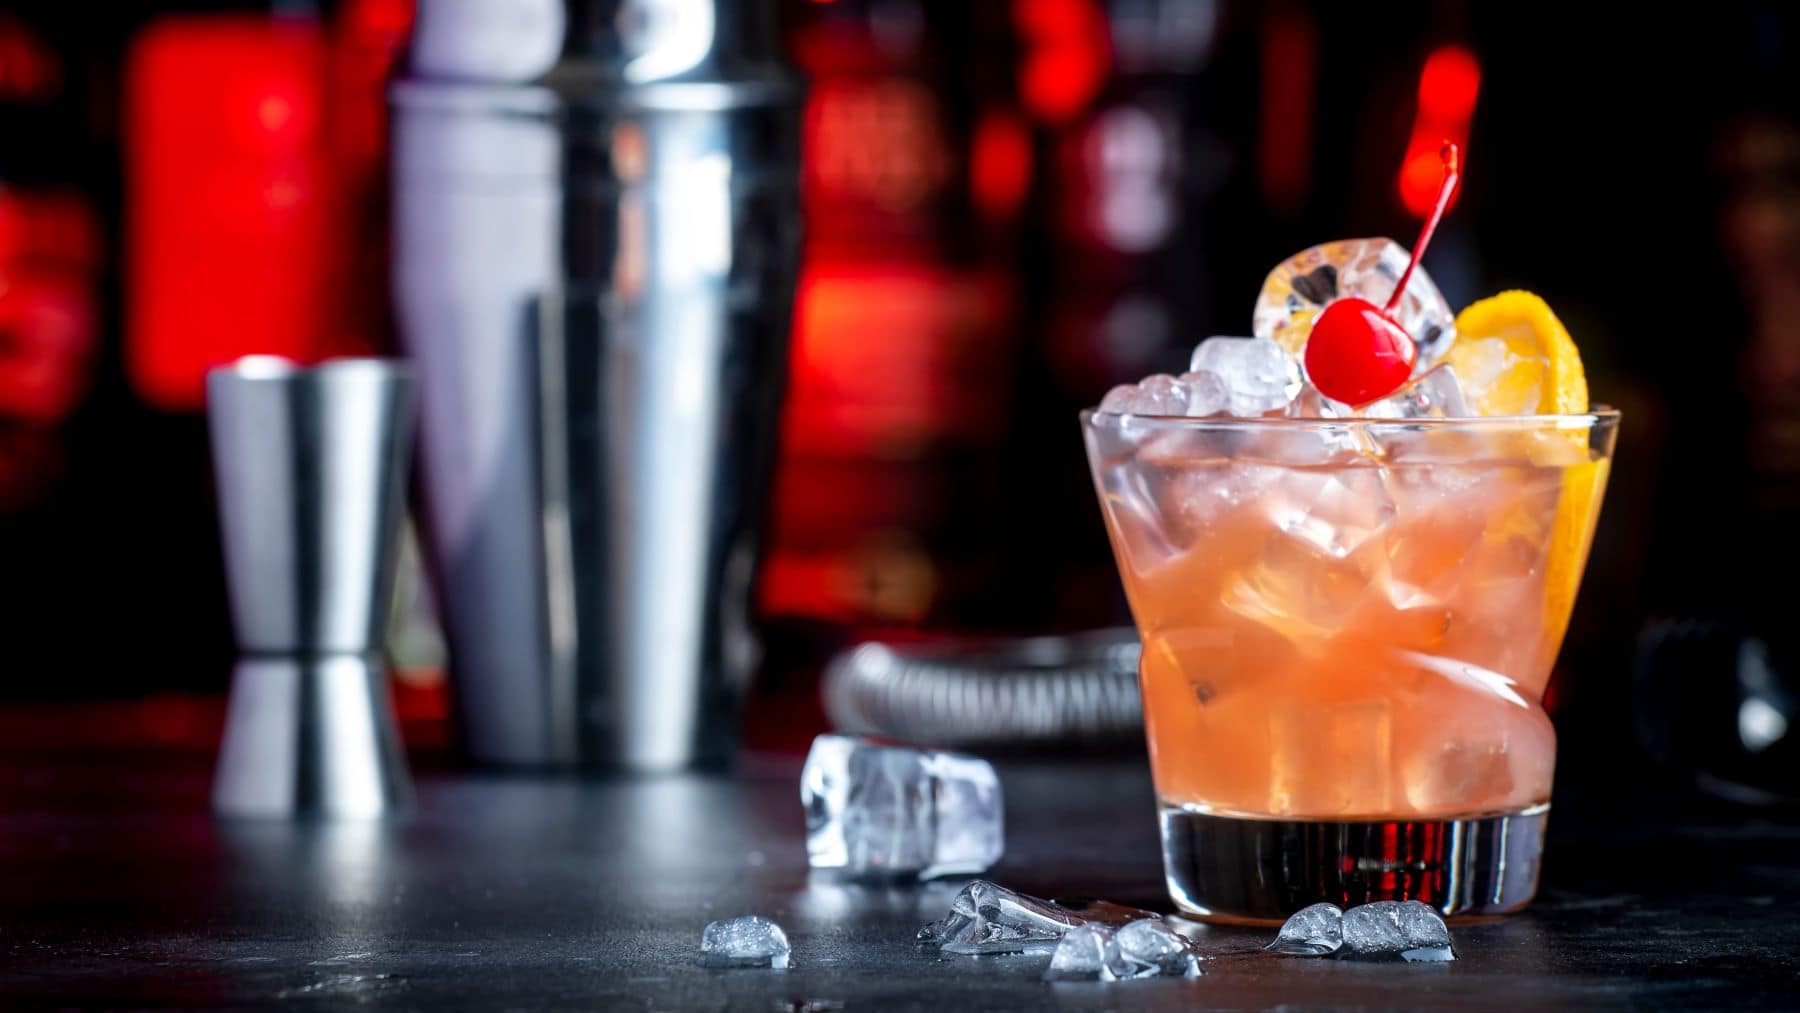 Whiskey Daisy mit Zitronenscheibe, Cocktail-Kirsche und Eis im Glas auf dunklem Untergrund. Im Hintergrund eine unscharfe Bar, Barmaß, Cccktail-Shaker und Eiswürfel. Frontalansicht.